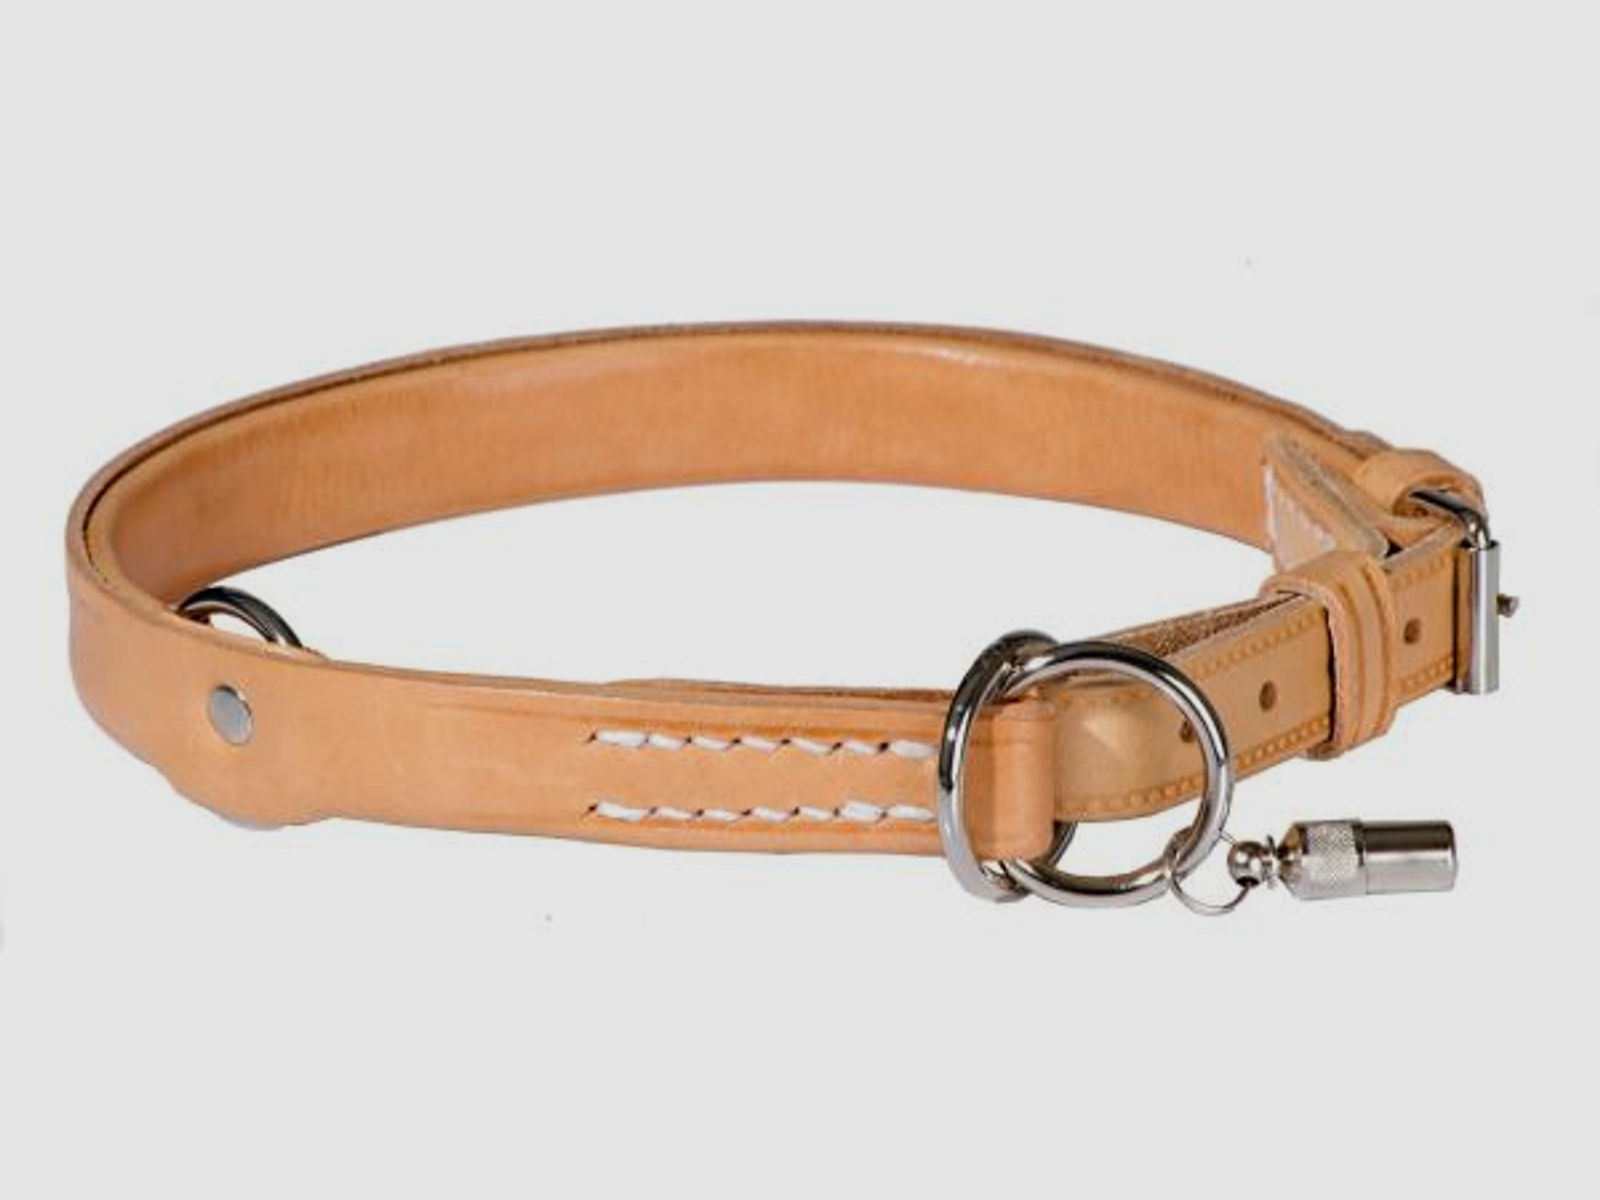 AKAH Hunde-Halsband Würger begrenzt 30 cm SONDERPREIS - Lagerrest